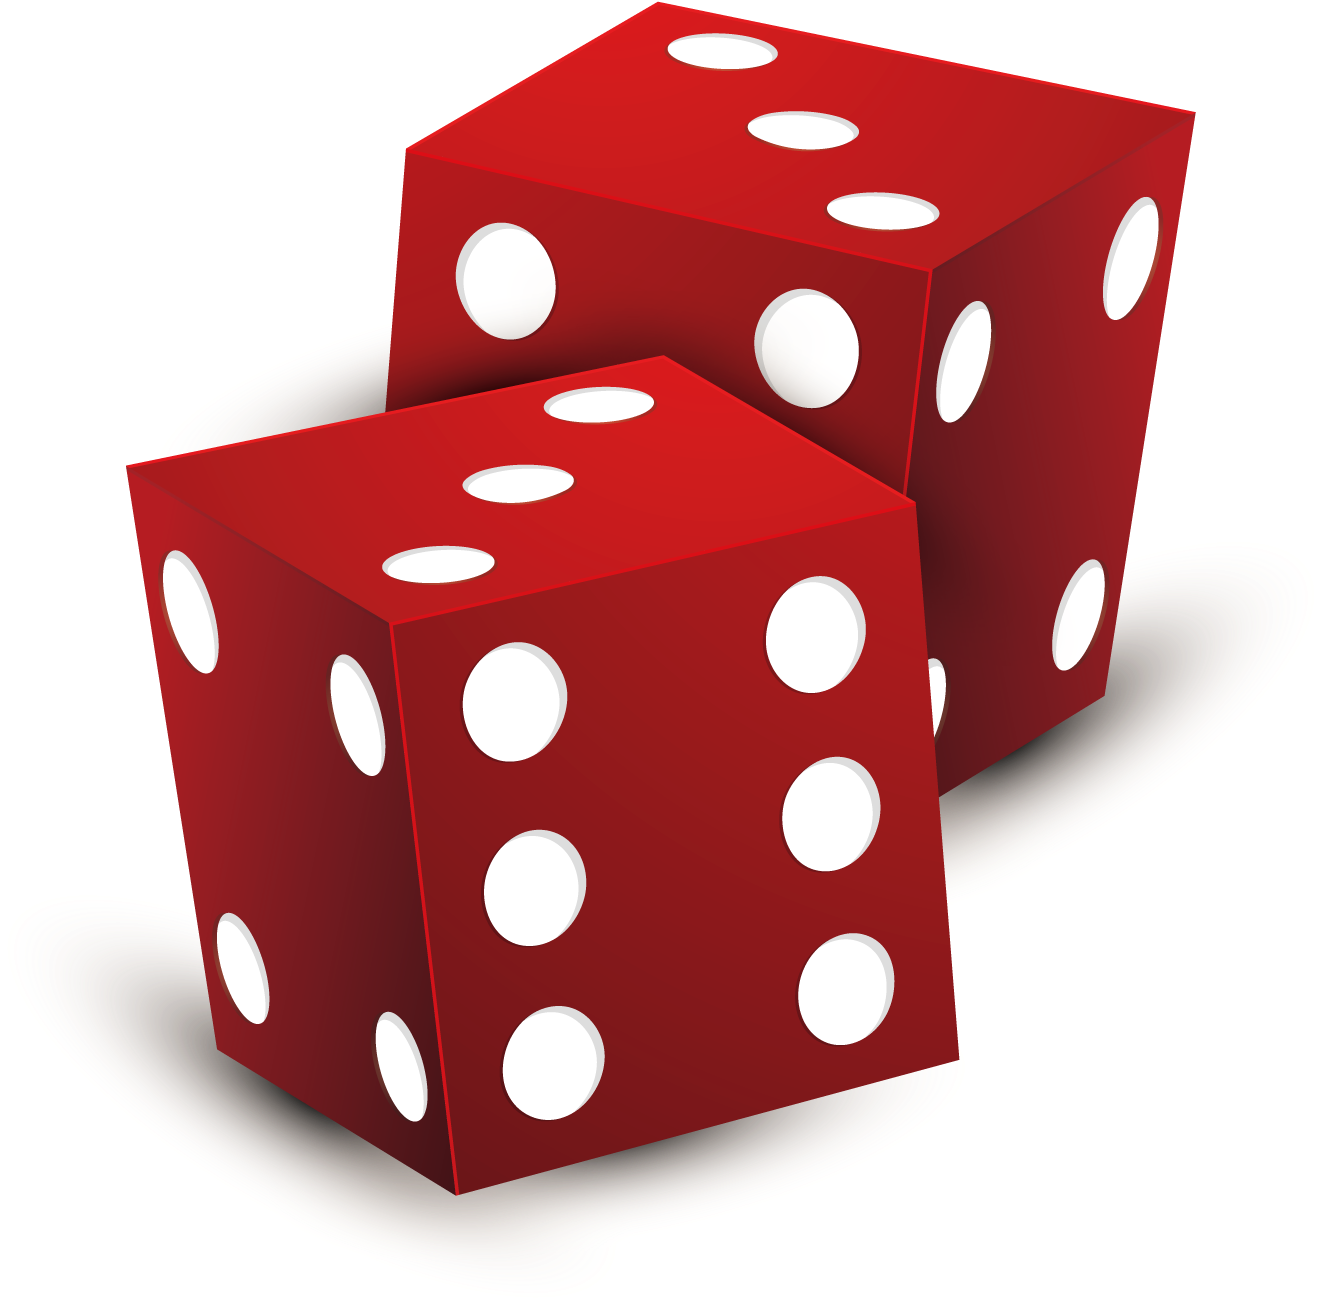 Dice Risk Casino Token Roulette - Dice Risk Casino Token Roulette (1500x1500)